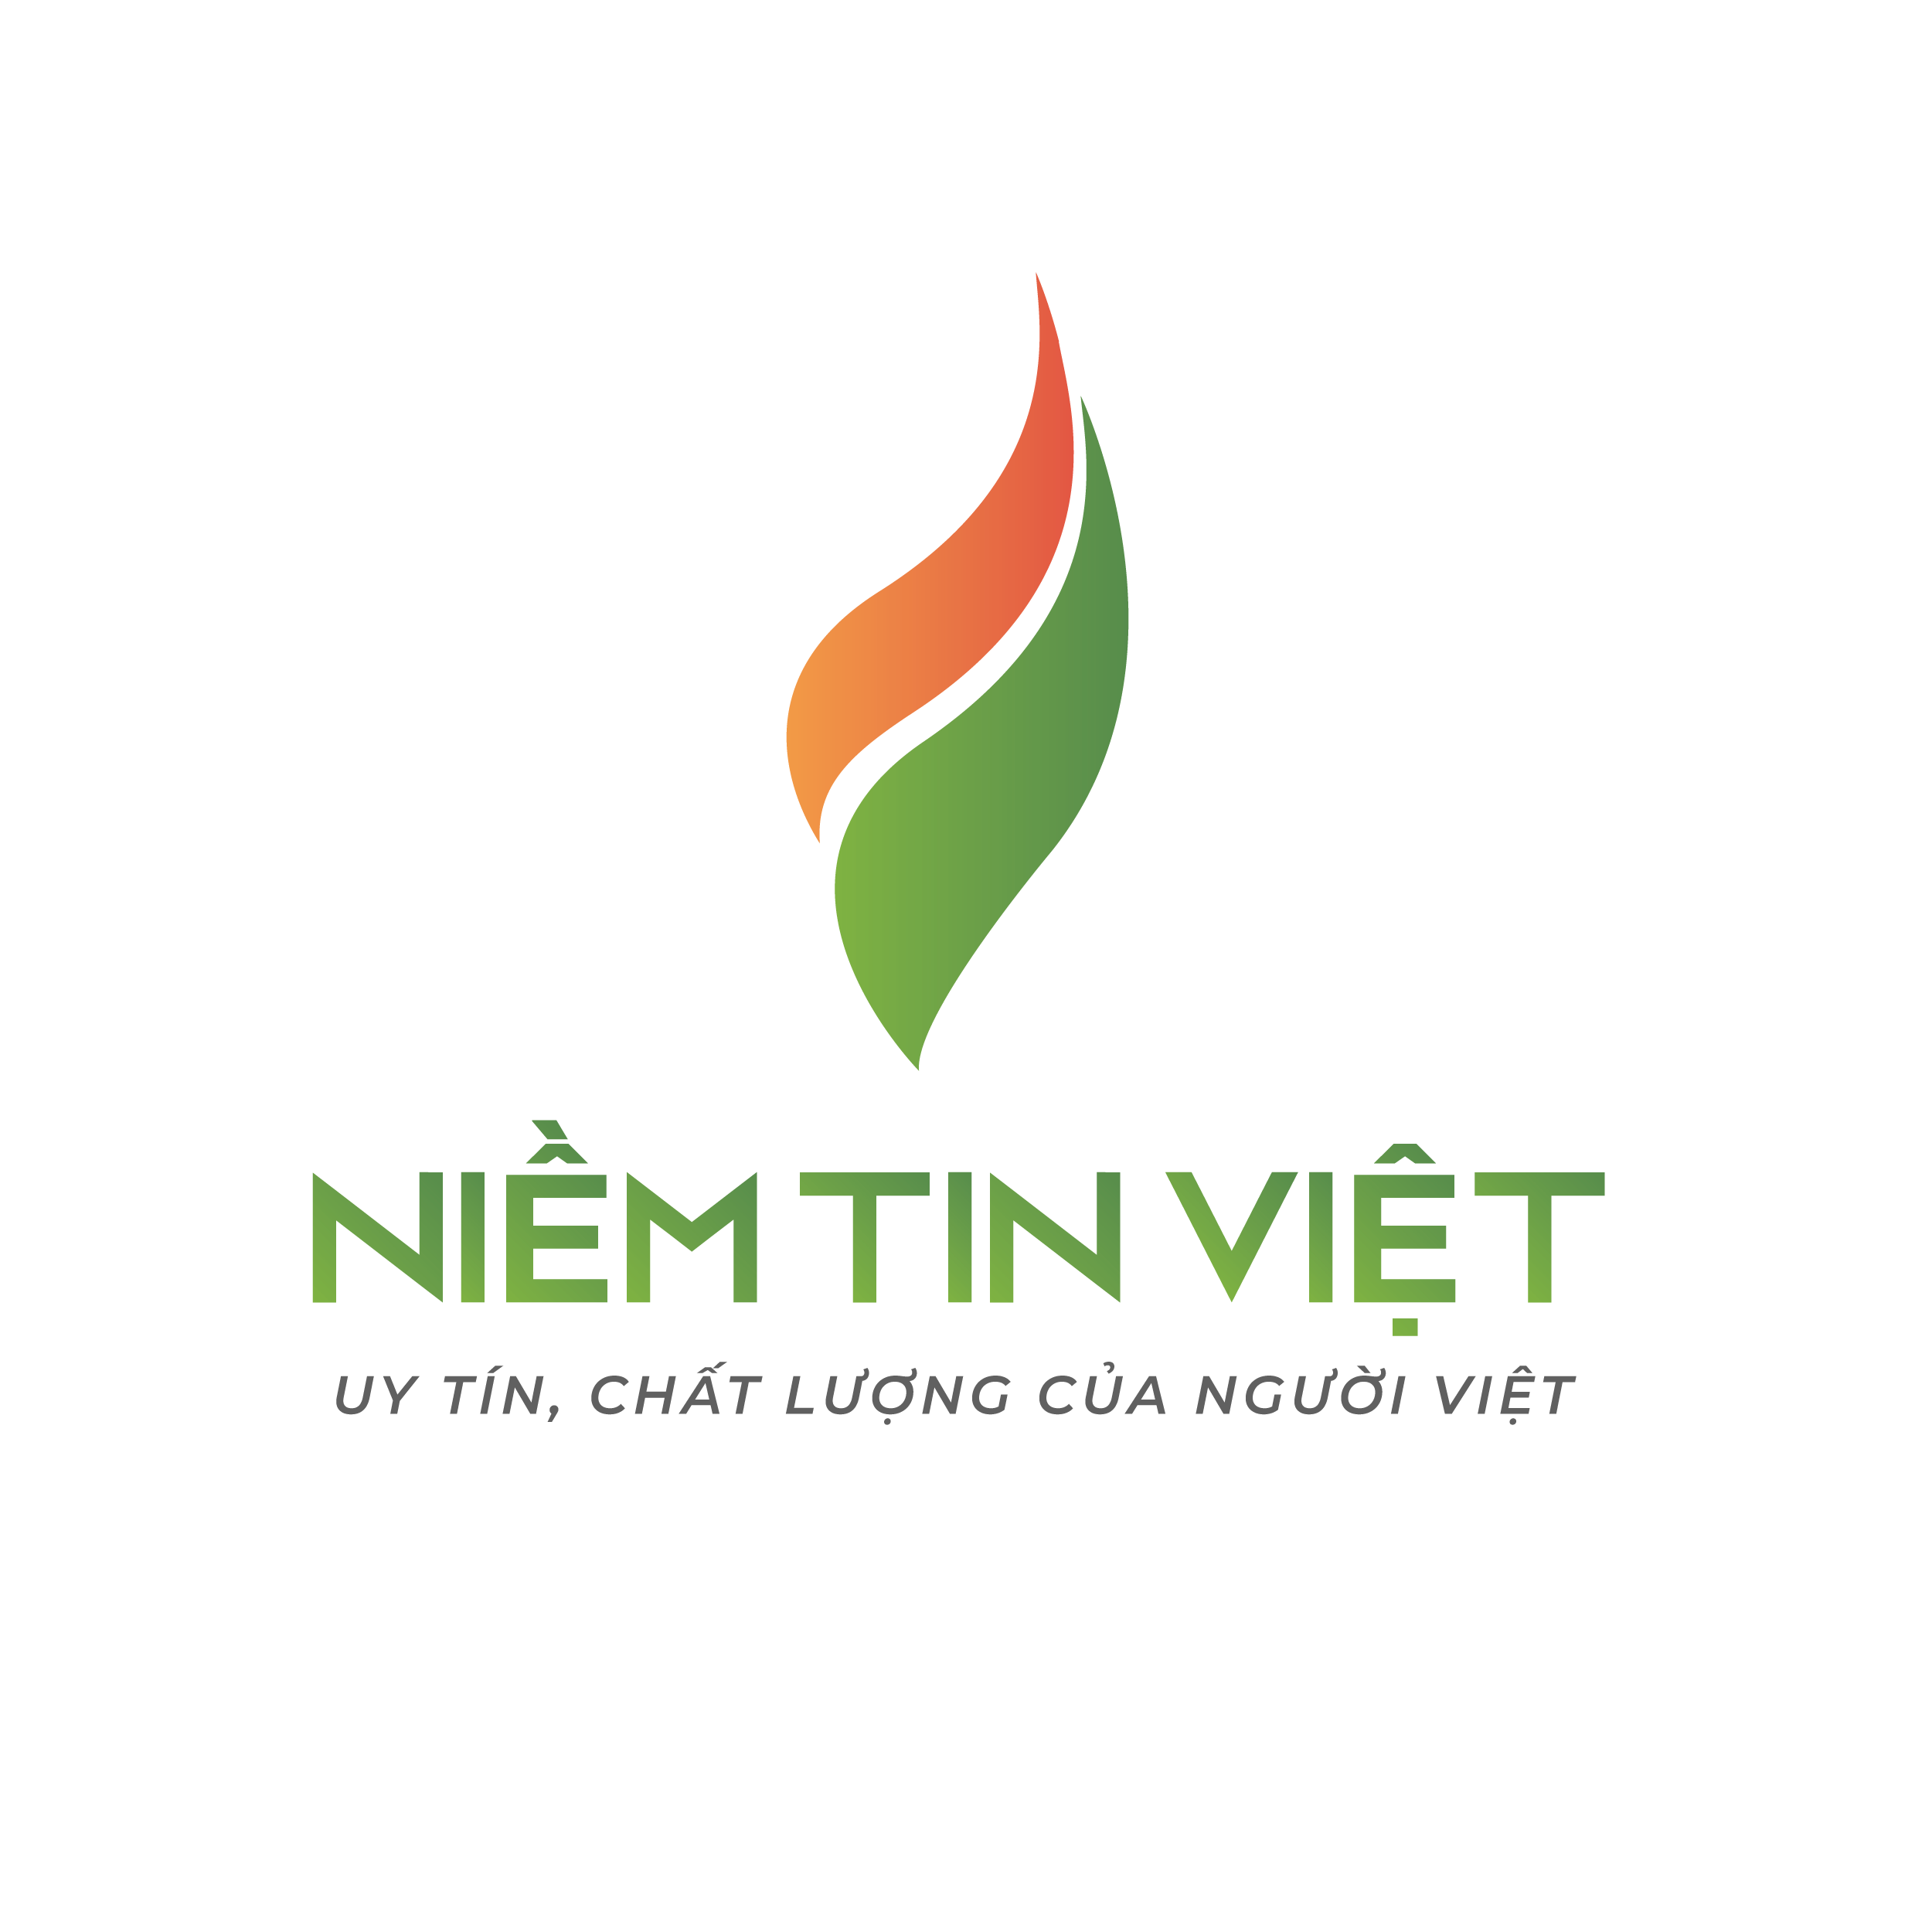 Công ty TNHH Nhiệt Lạnh Niềm Tin Việt - Uy Tín, Chất Lượng Của Người Việt